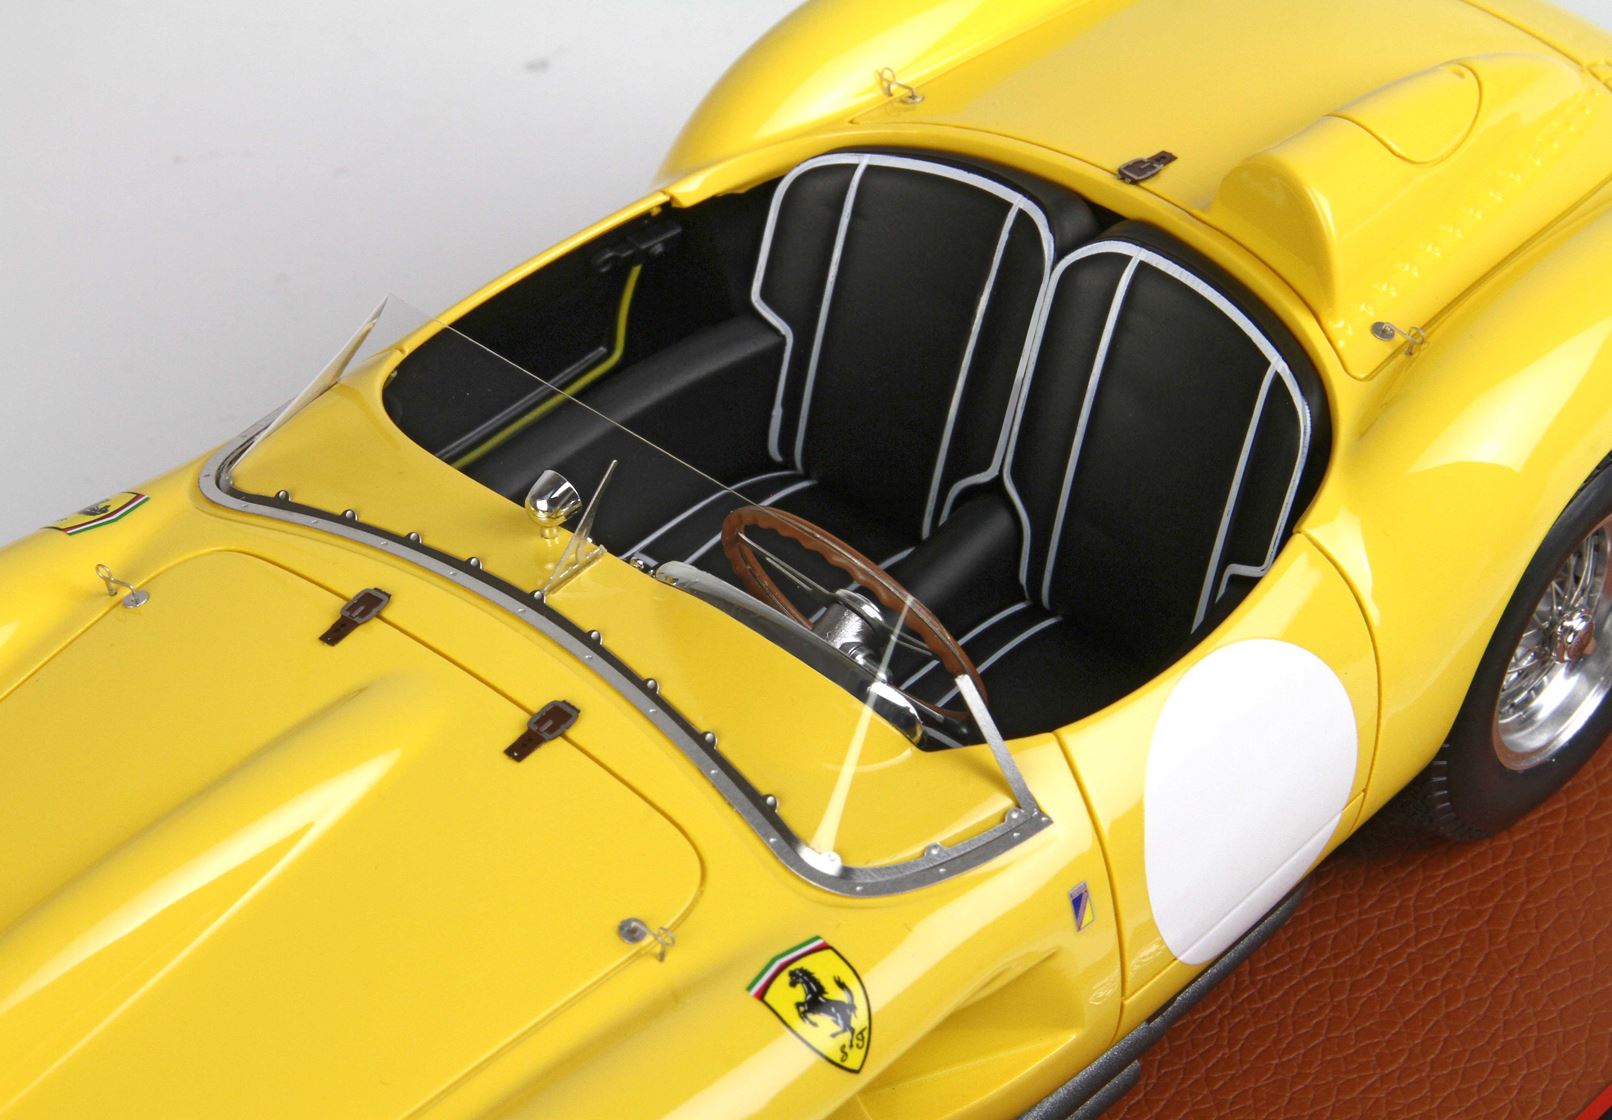 BBR 1957 Ferrari 250 TR 1:18 scale in Yellow